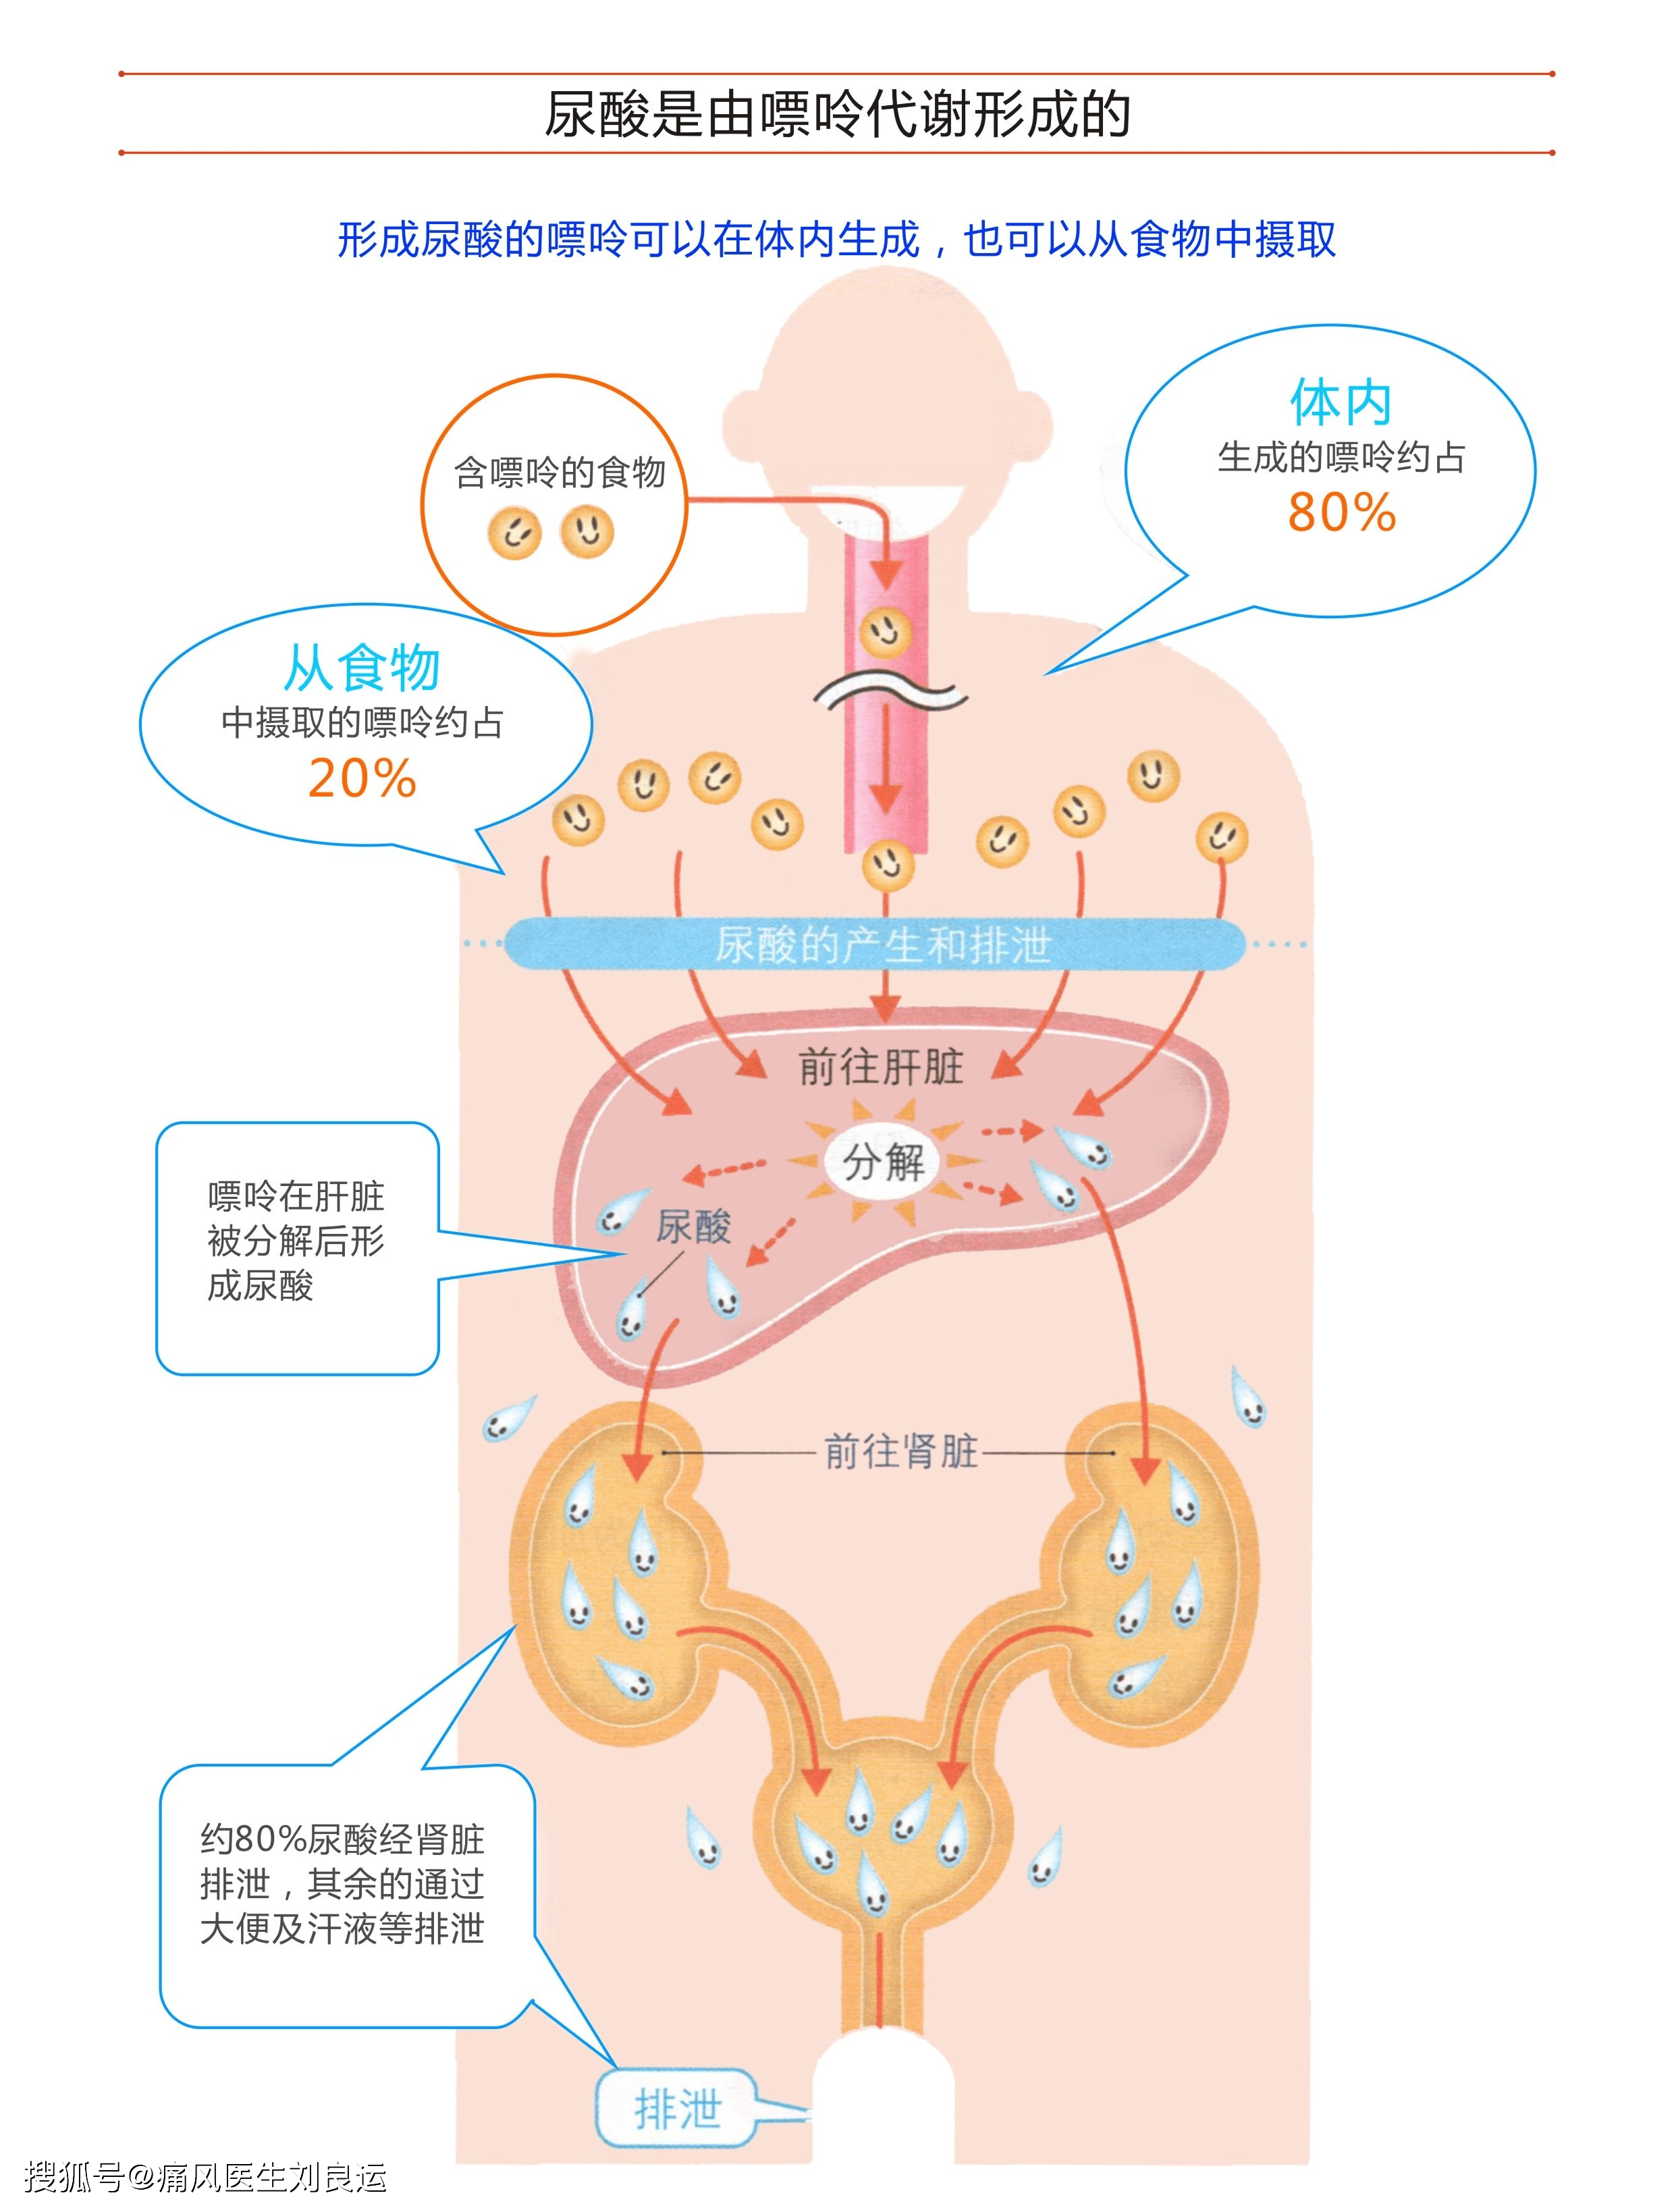 嘌呤前往肝脏分解后合成尿酸,尿酸在肾脏及肠道排泄